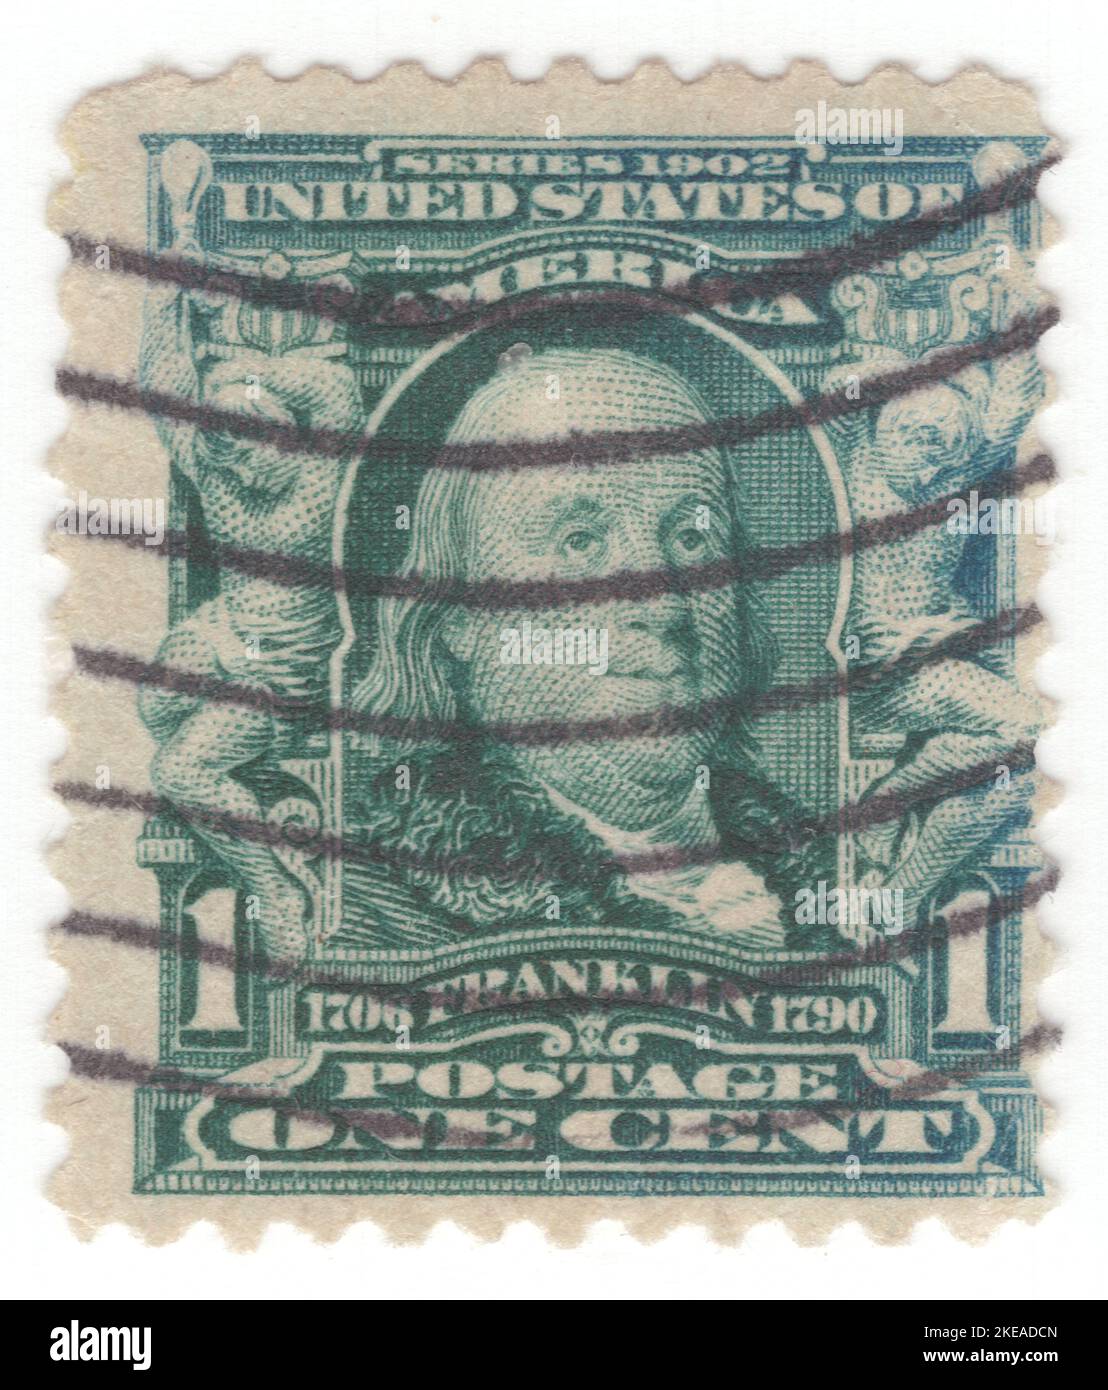 USA - 1903: Eine 1 Cent blau-grüne Briefmarke, die das Porträt von Benjamin Franklin zeigt. Amerikanischer Universalgelehrter, der als Schriftsteller, Wissenschaftler, Erfinder, Staatsmann, Diplomat, Drucker, Verleger und politischer Philosoph. Unter den führenden Intellektuellen seiner Zeit war Franklin einer der Gründungsväter der Vereinigten Staaten, ein Drahter und Unterzeichner der Unabhängigkeitserklärung der Vereinigten Staaten und der erste Vereinigte Staaten Postmaster General Stockfoto